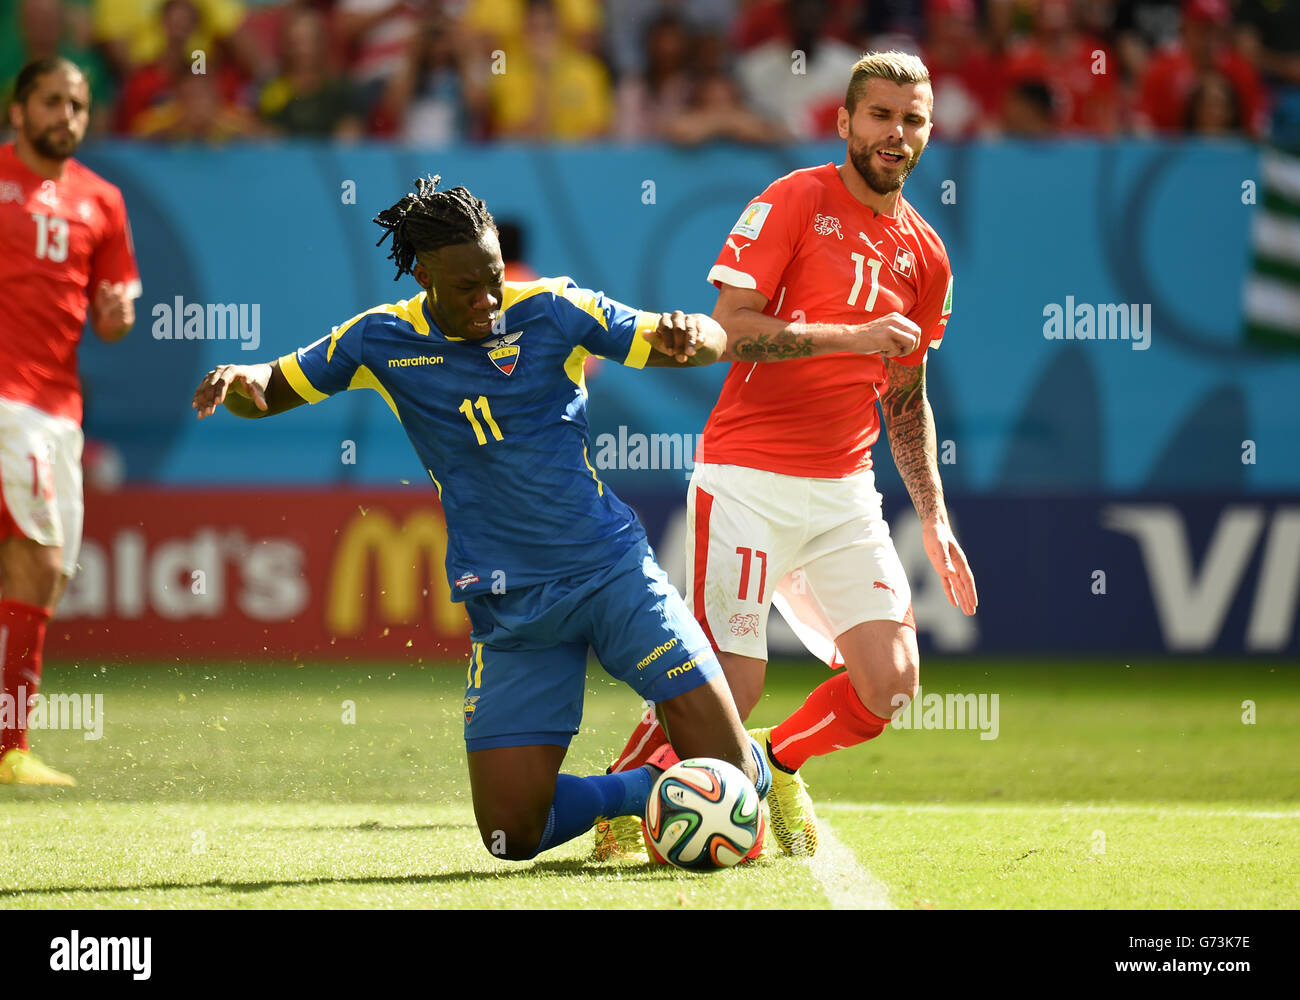 Soccer - FIFA World Cup 2014 - Group E - Switzerland v Ecuador - Estadio Nacional. Ecuador's Felipe Caicedo (left) and Switzerland's Valon Behrami battle for the ball Stock Photo